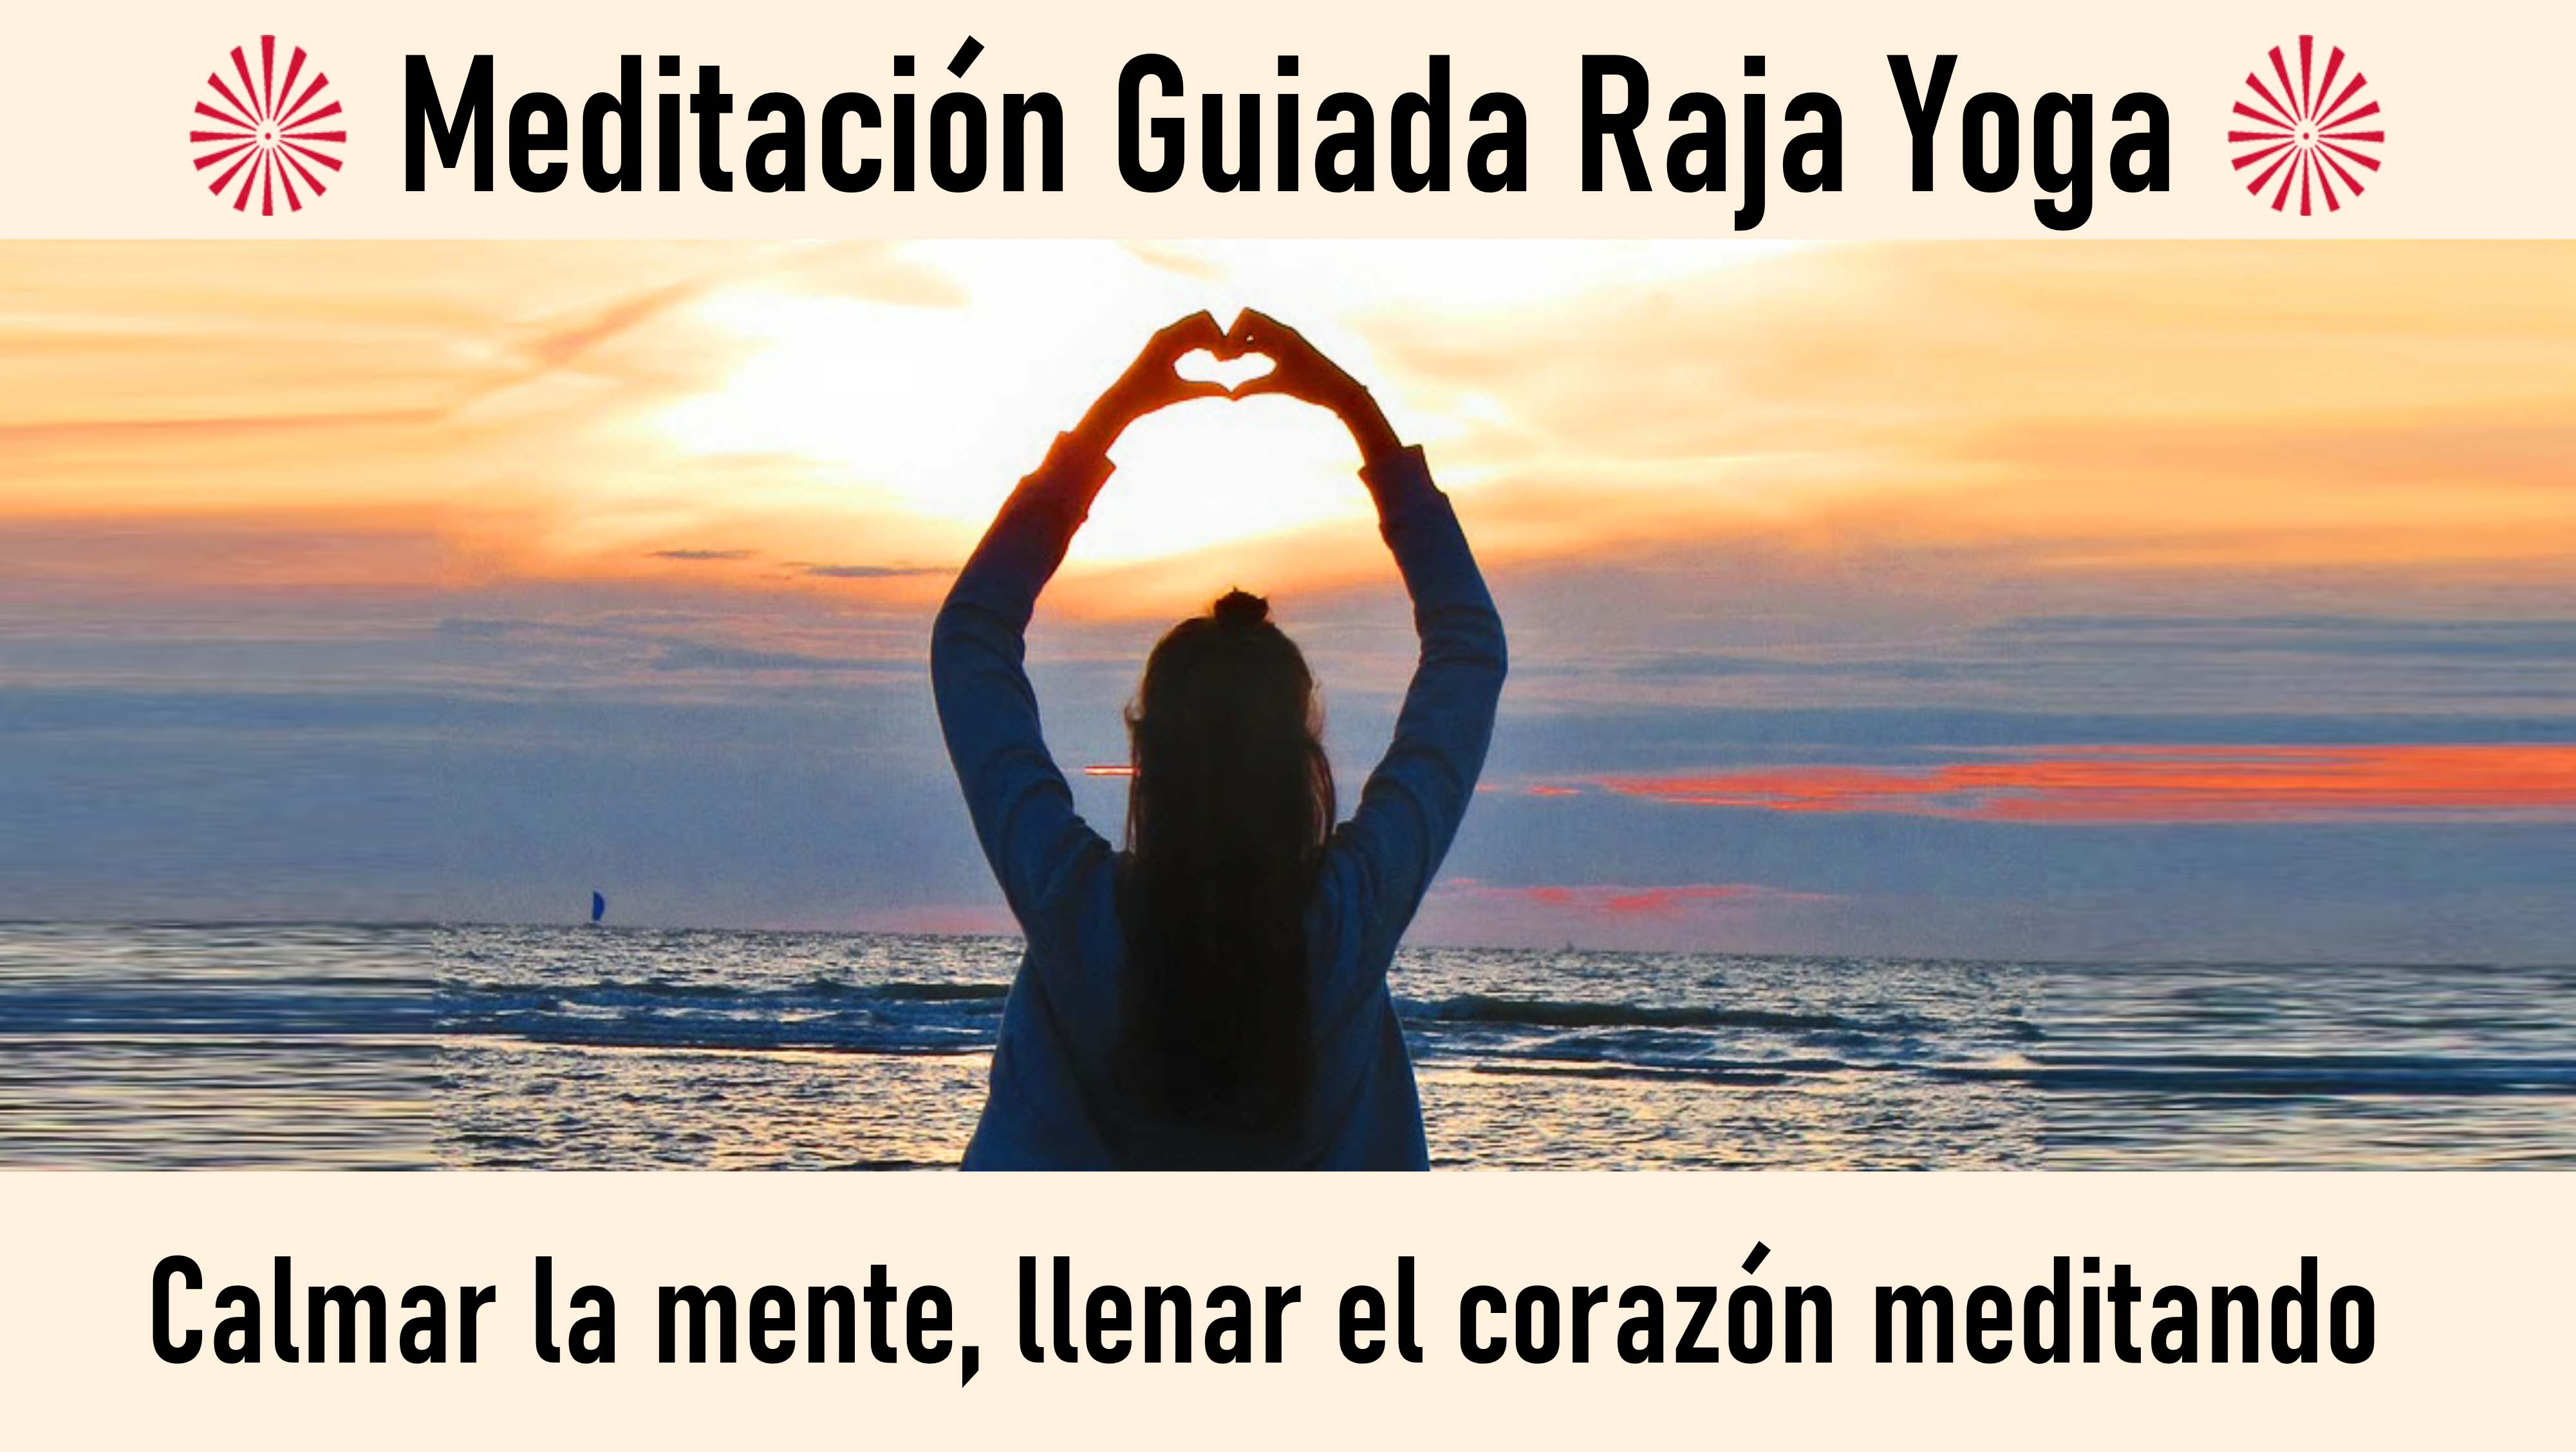 Meditación Raja Yoga:Llenar el corazón meditando (19 Agosto 2020) On-line desde Sevilla